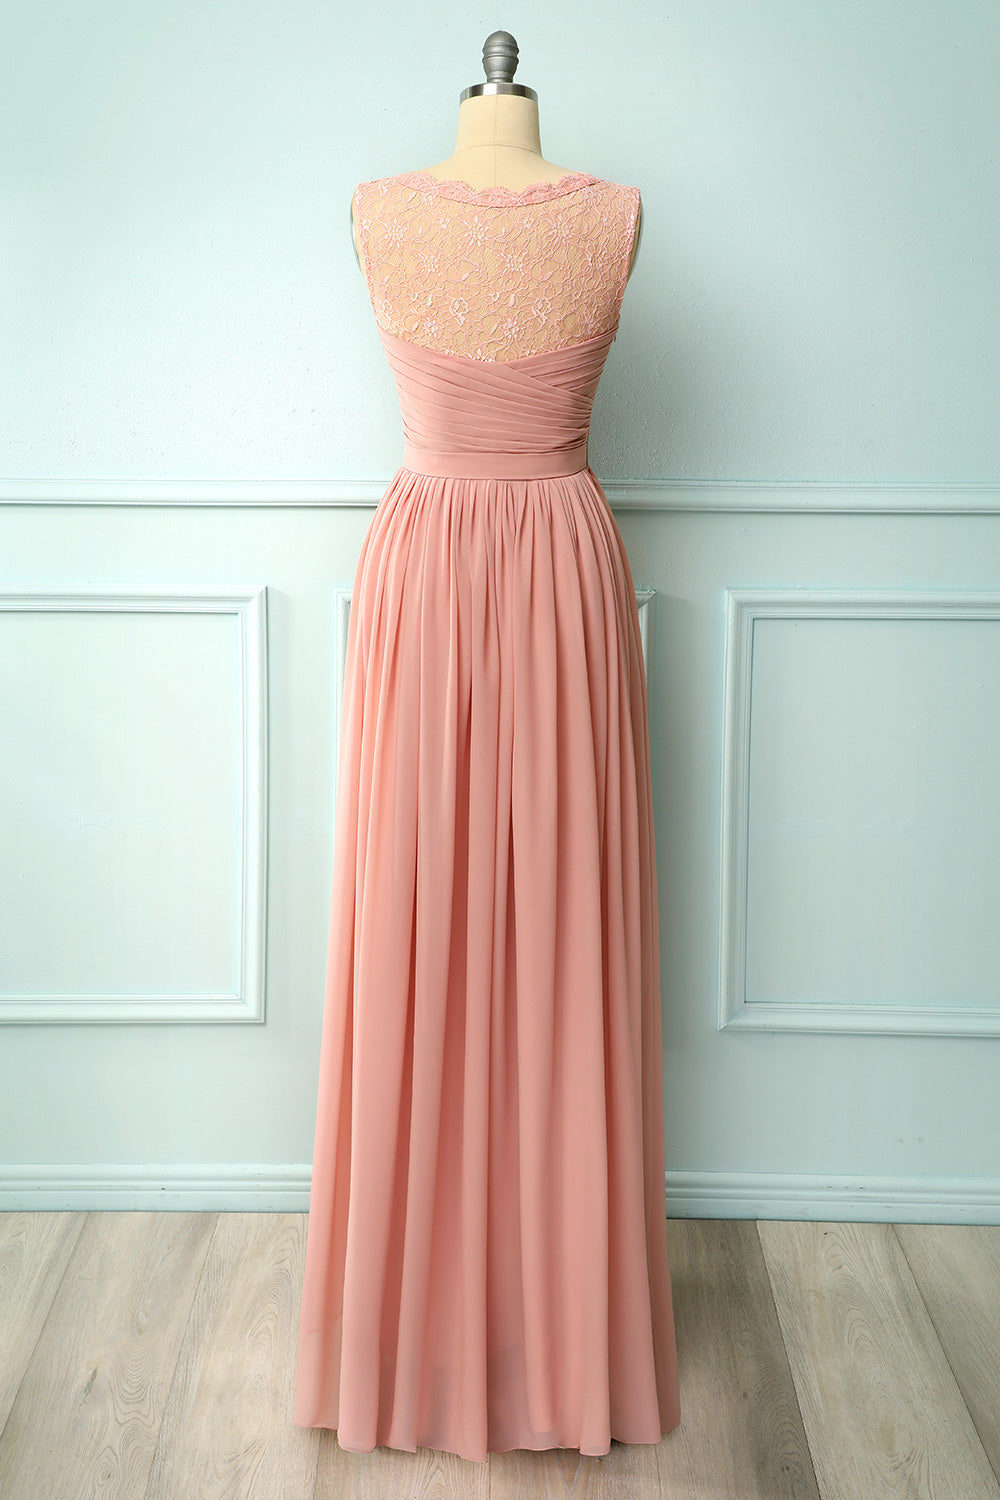 Ruffle Blush Lace Dress